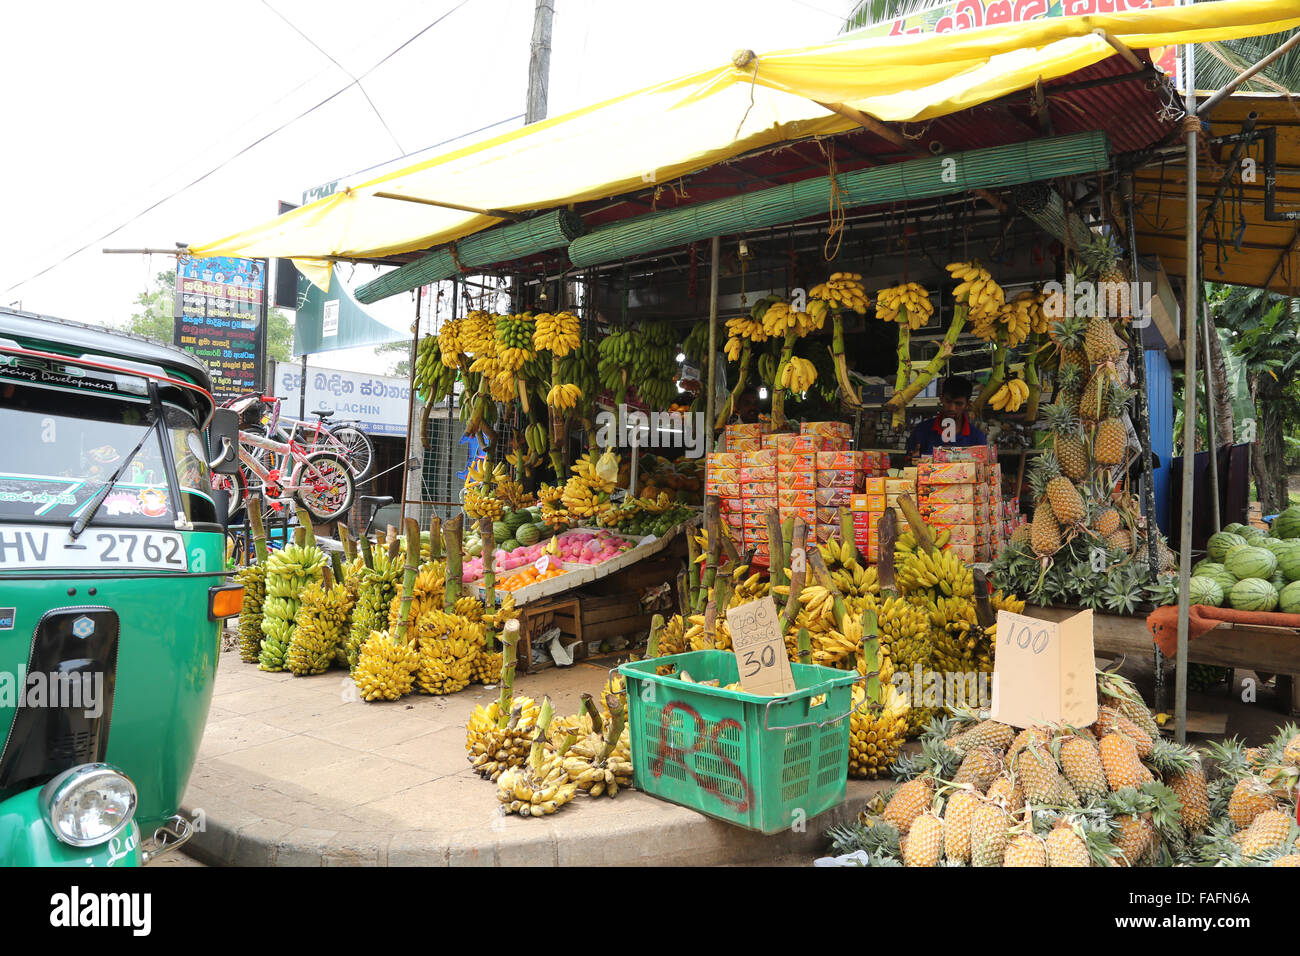 Mercato della frutta in stallo da strada in Sri Lanka la vendita delle banane con tuk tuk Foto Stock